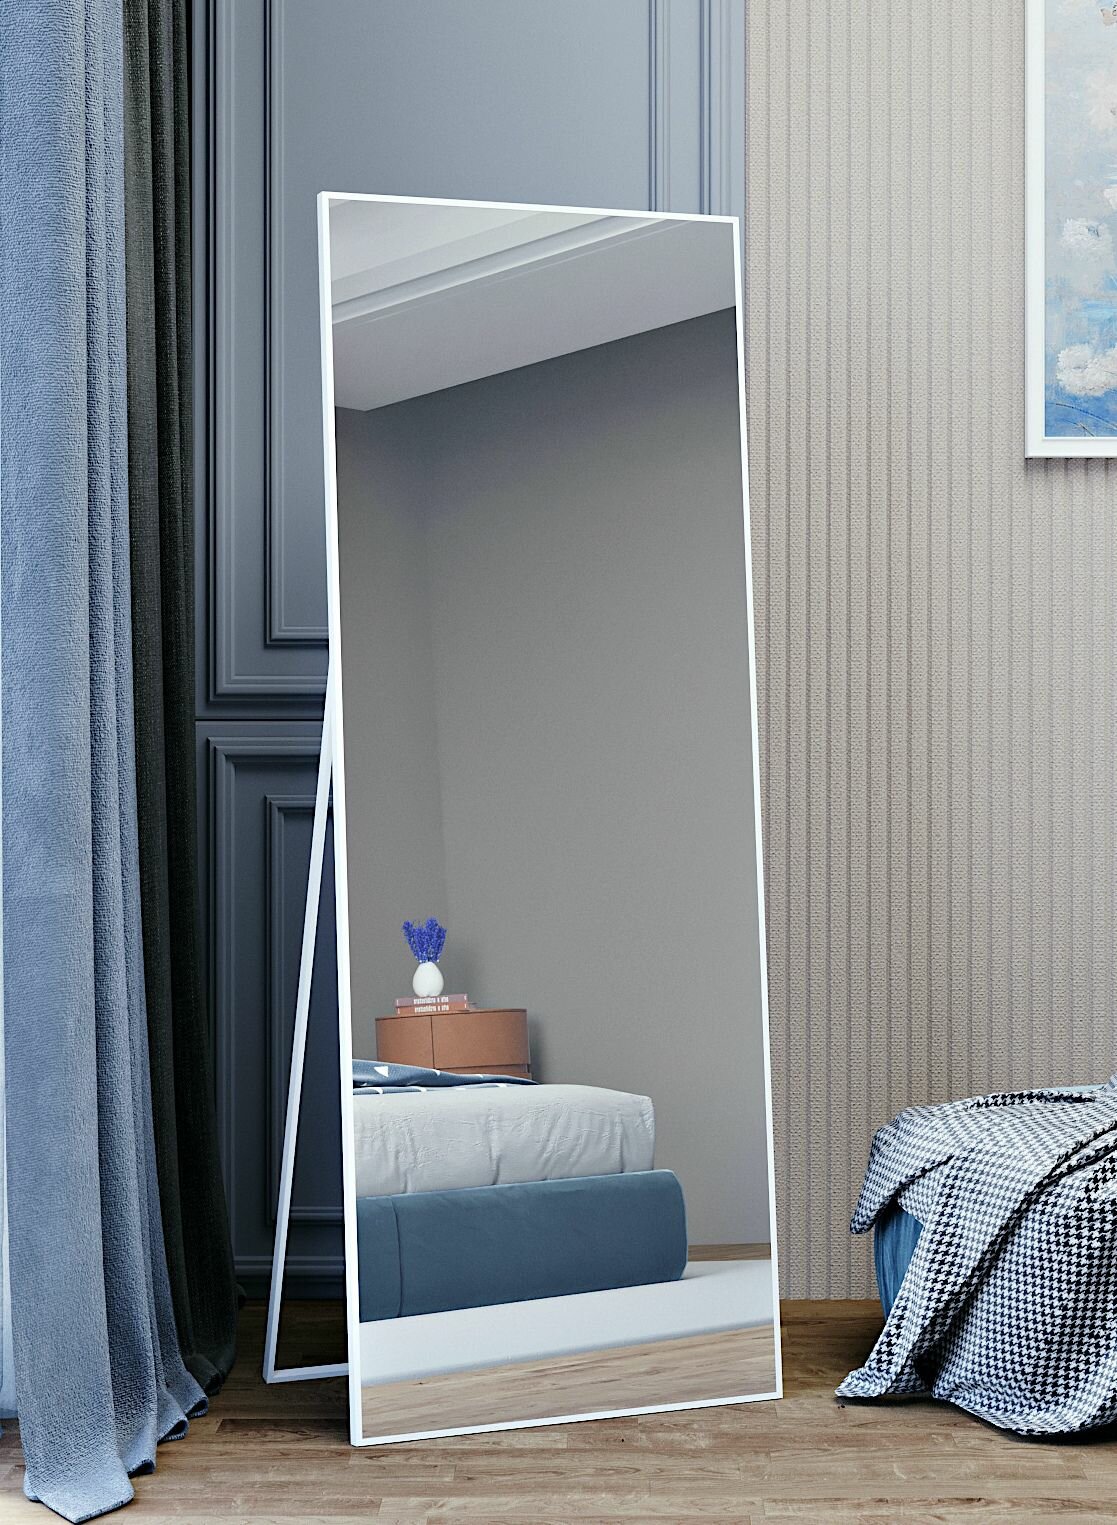 Зеркала на подставке белые, большие напольные зеркала в раме TODA ALMA, 160х60 см